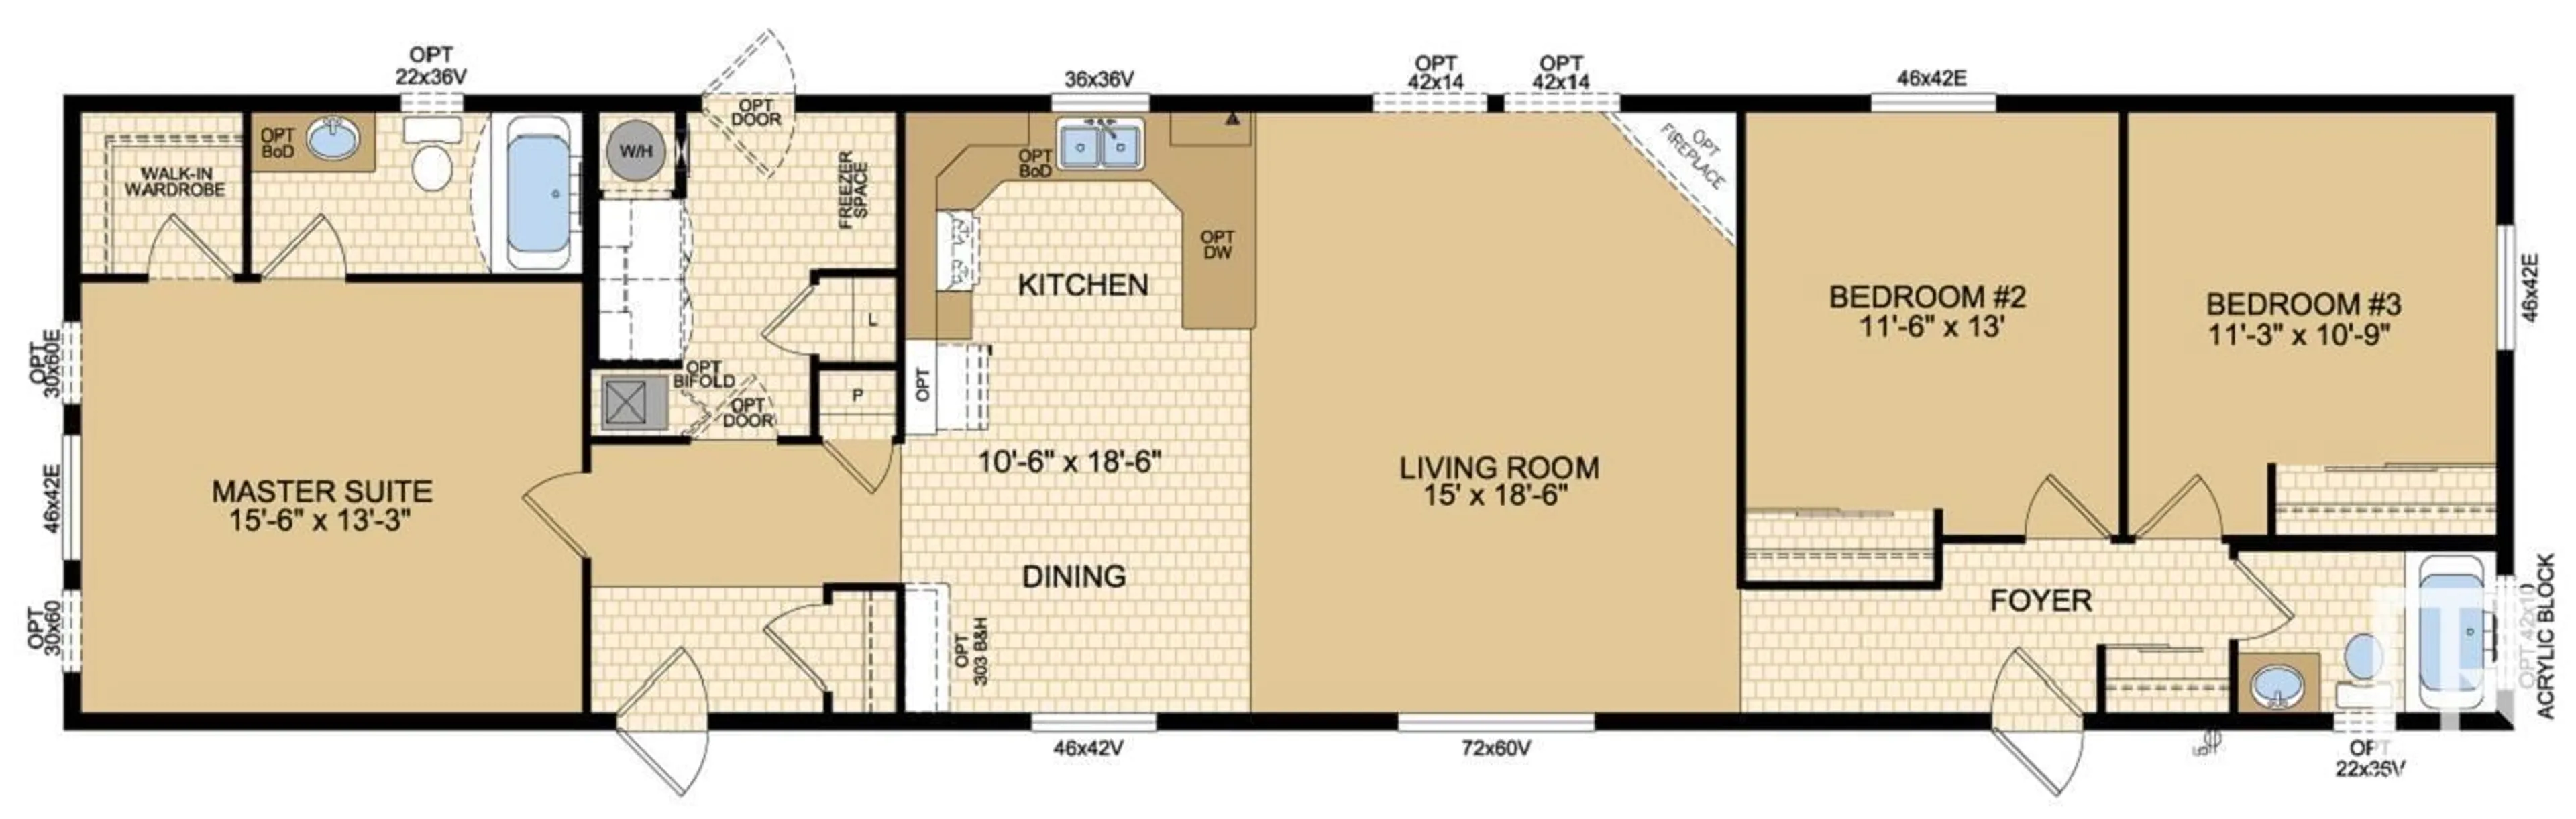 Floor plan for 101 LAKE AV, Rural Parkland County Alberta T0E0W0